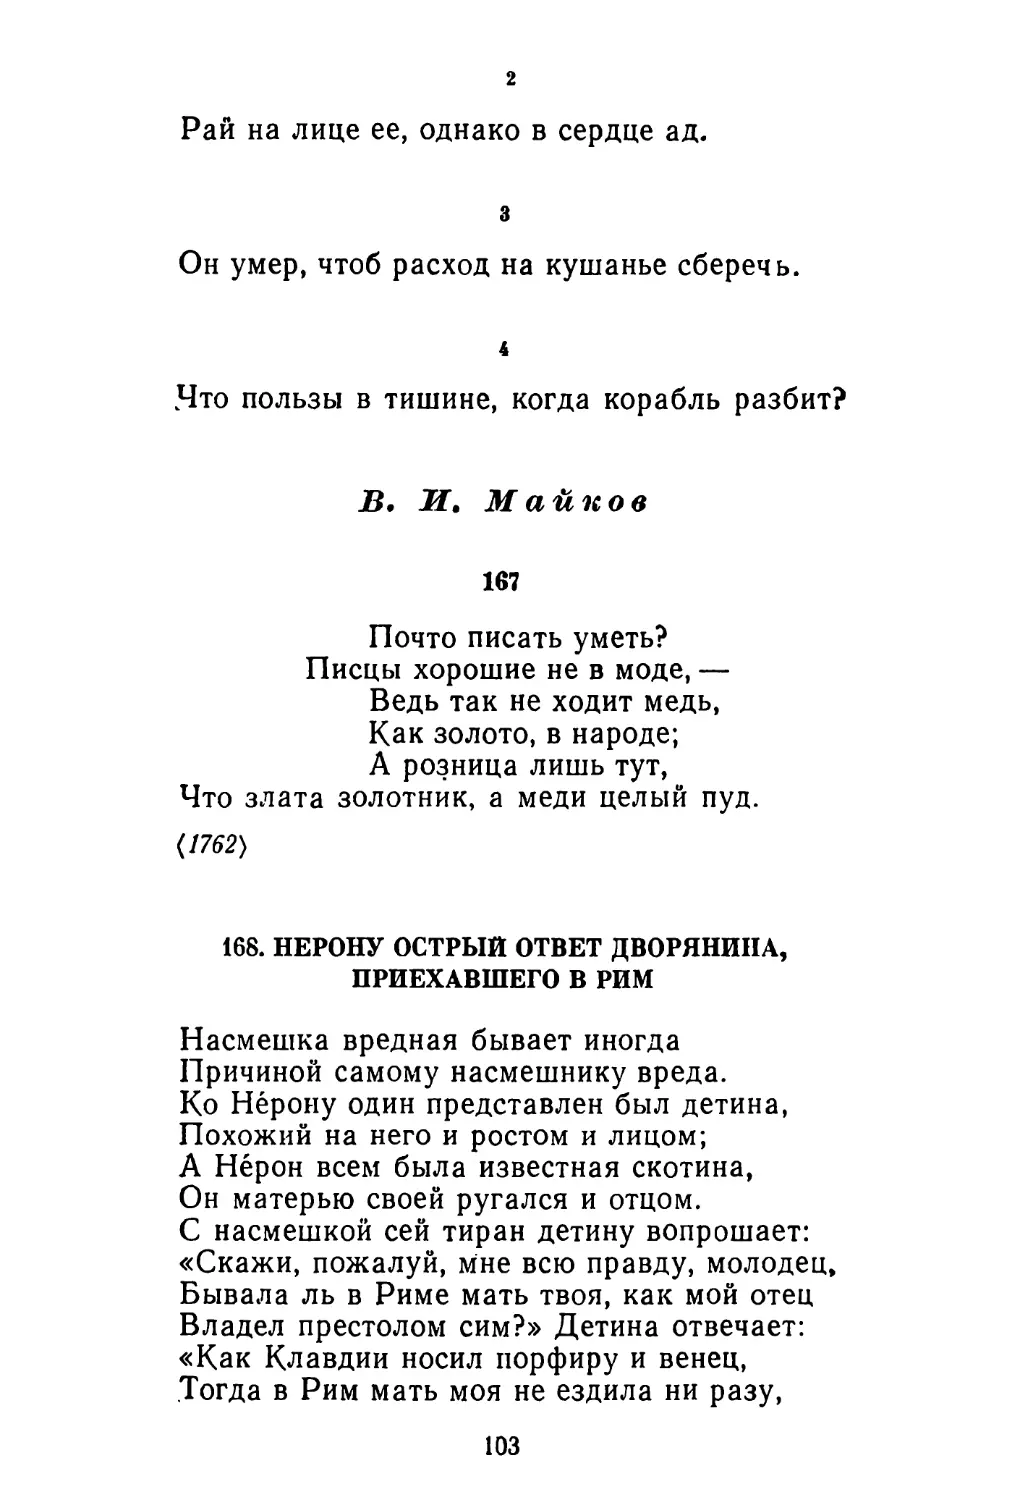 В. И. Майков